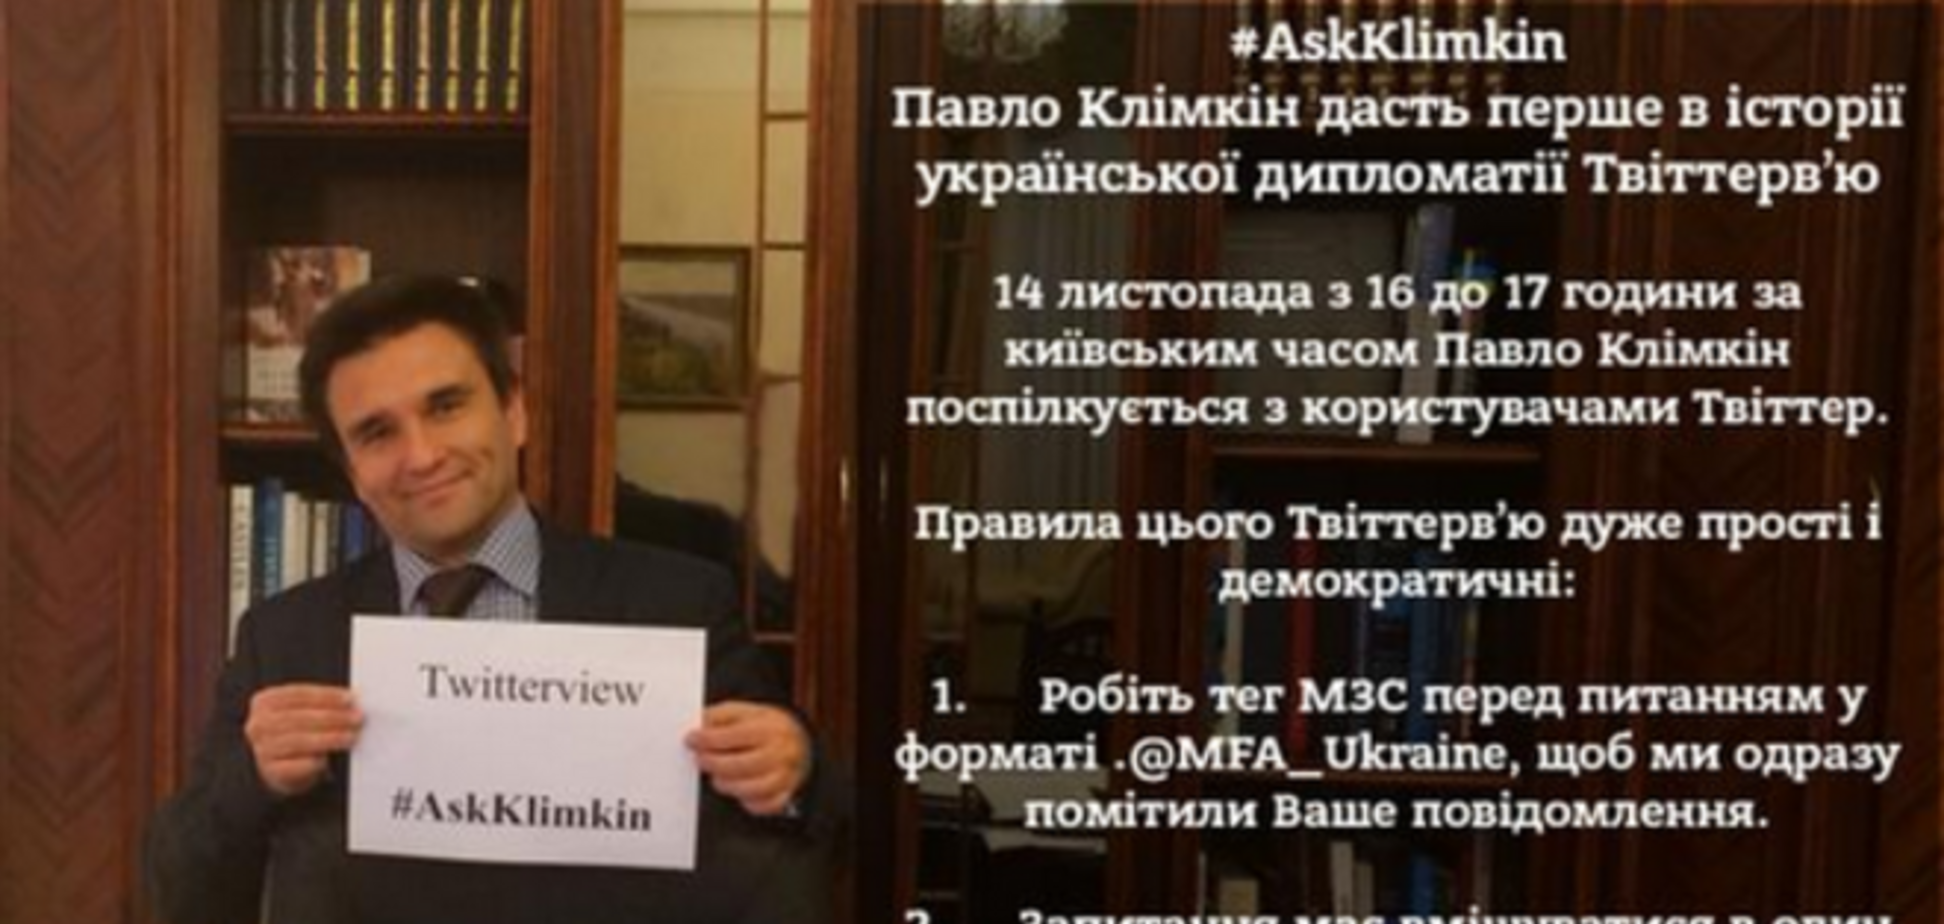 Климкин проведет первое в истории украинской дипломатии 'твиттервью'